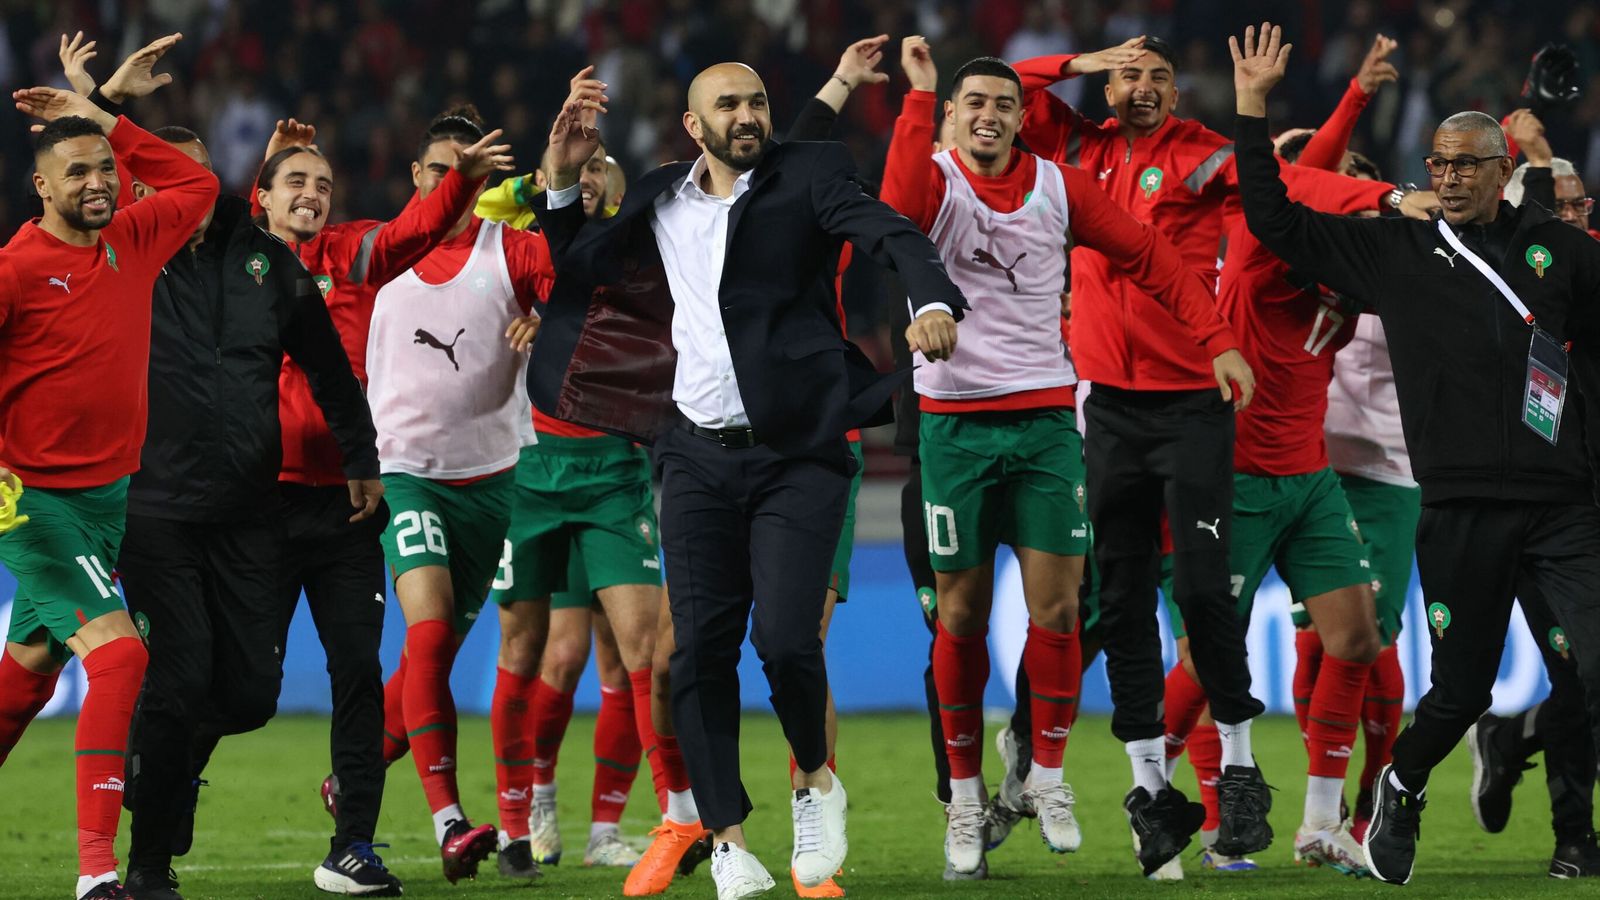 المغرب 2-1 البرازيل: المتأهلون لنصف نهائيات كأس العالم يسجلون فوزاً مشهوراً على فريق الفيفا صاحب المركز الأول في طنجة |  أخبار كرة القدم